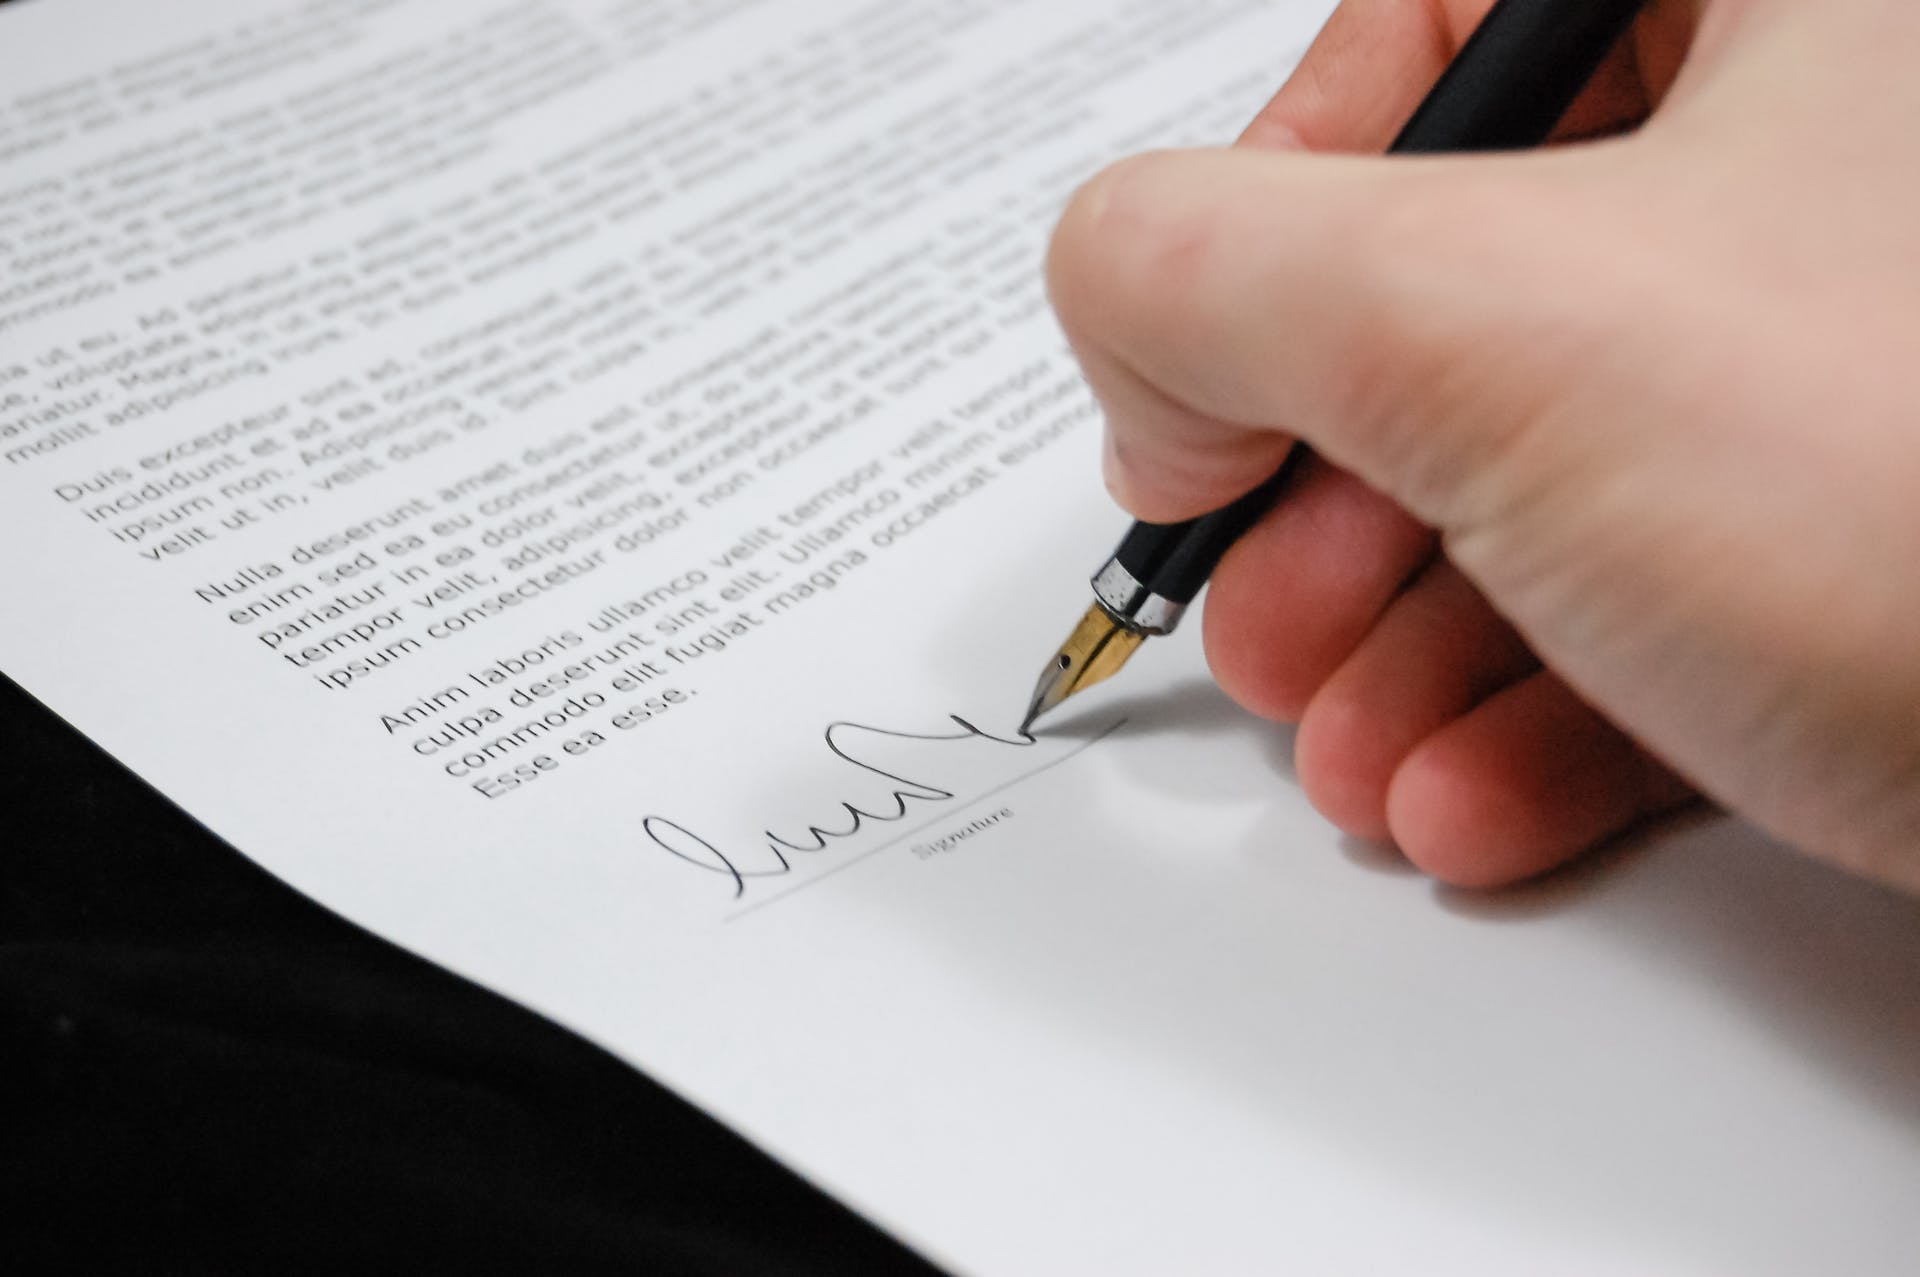 Personne signant un document juridique | Source : Pexels